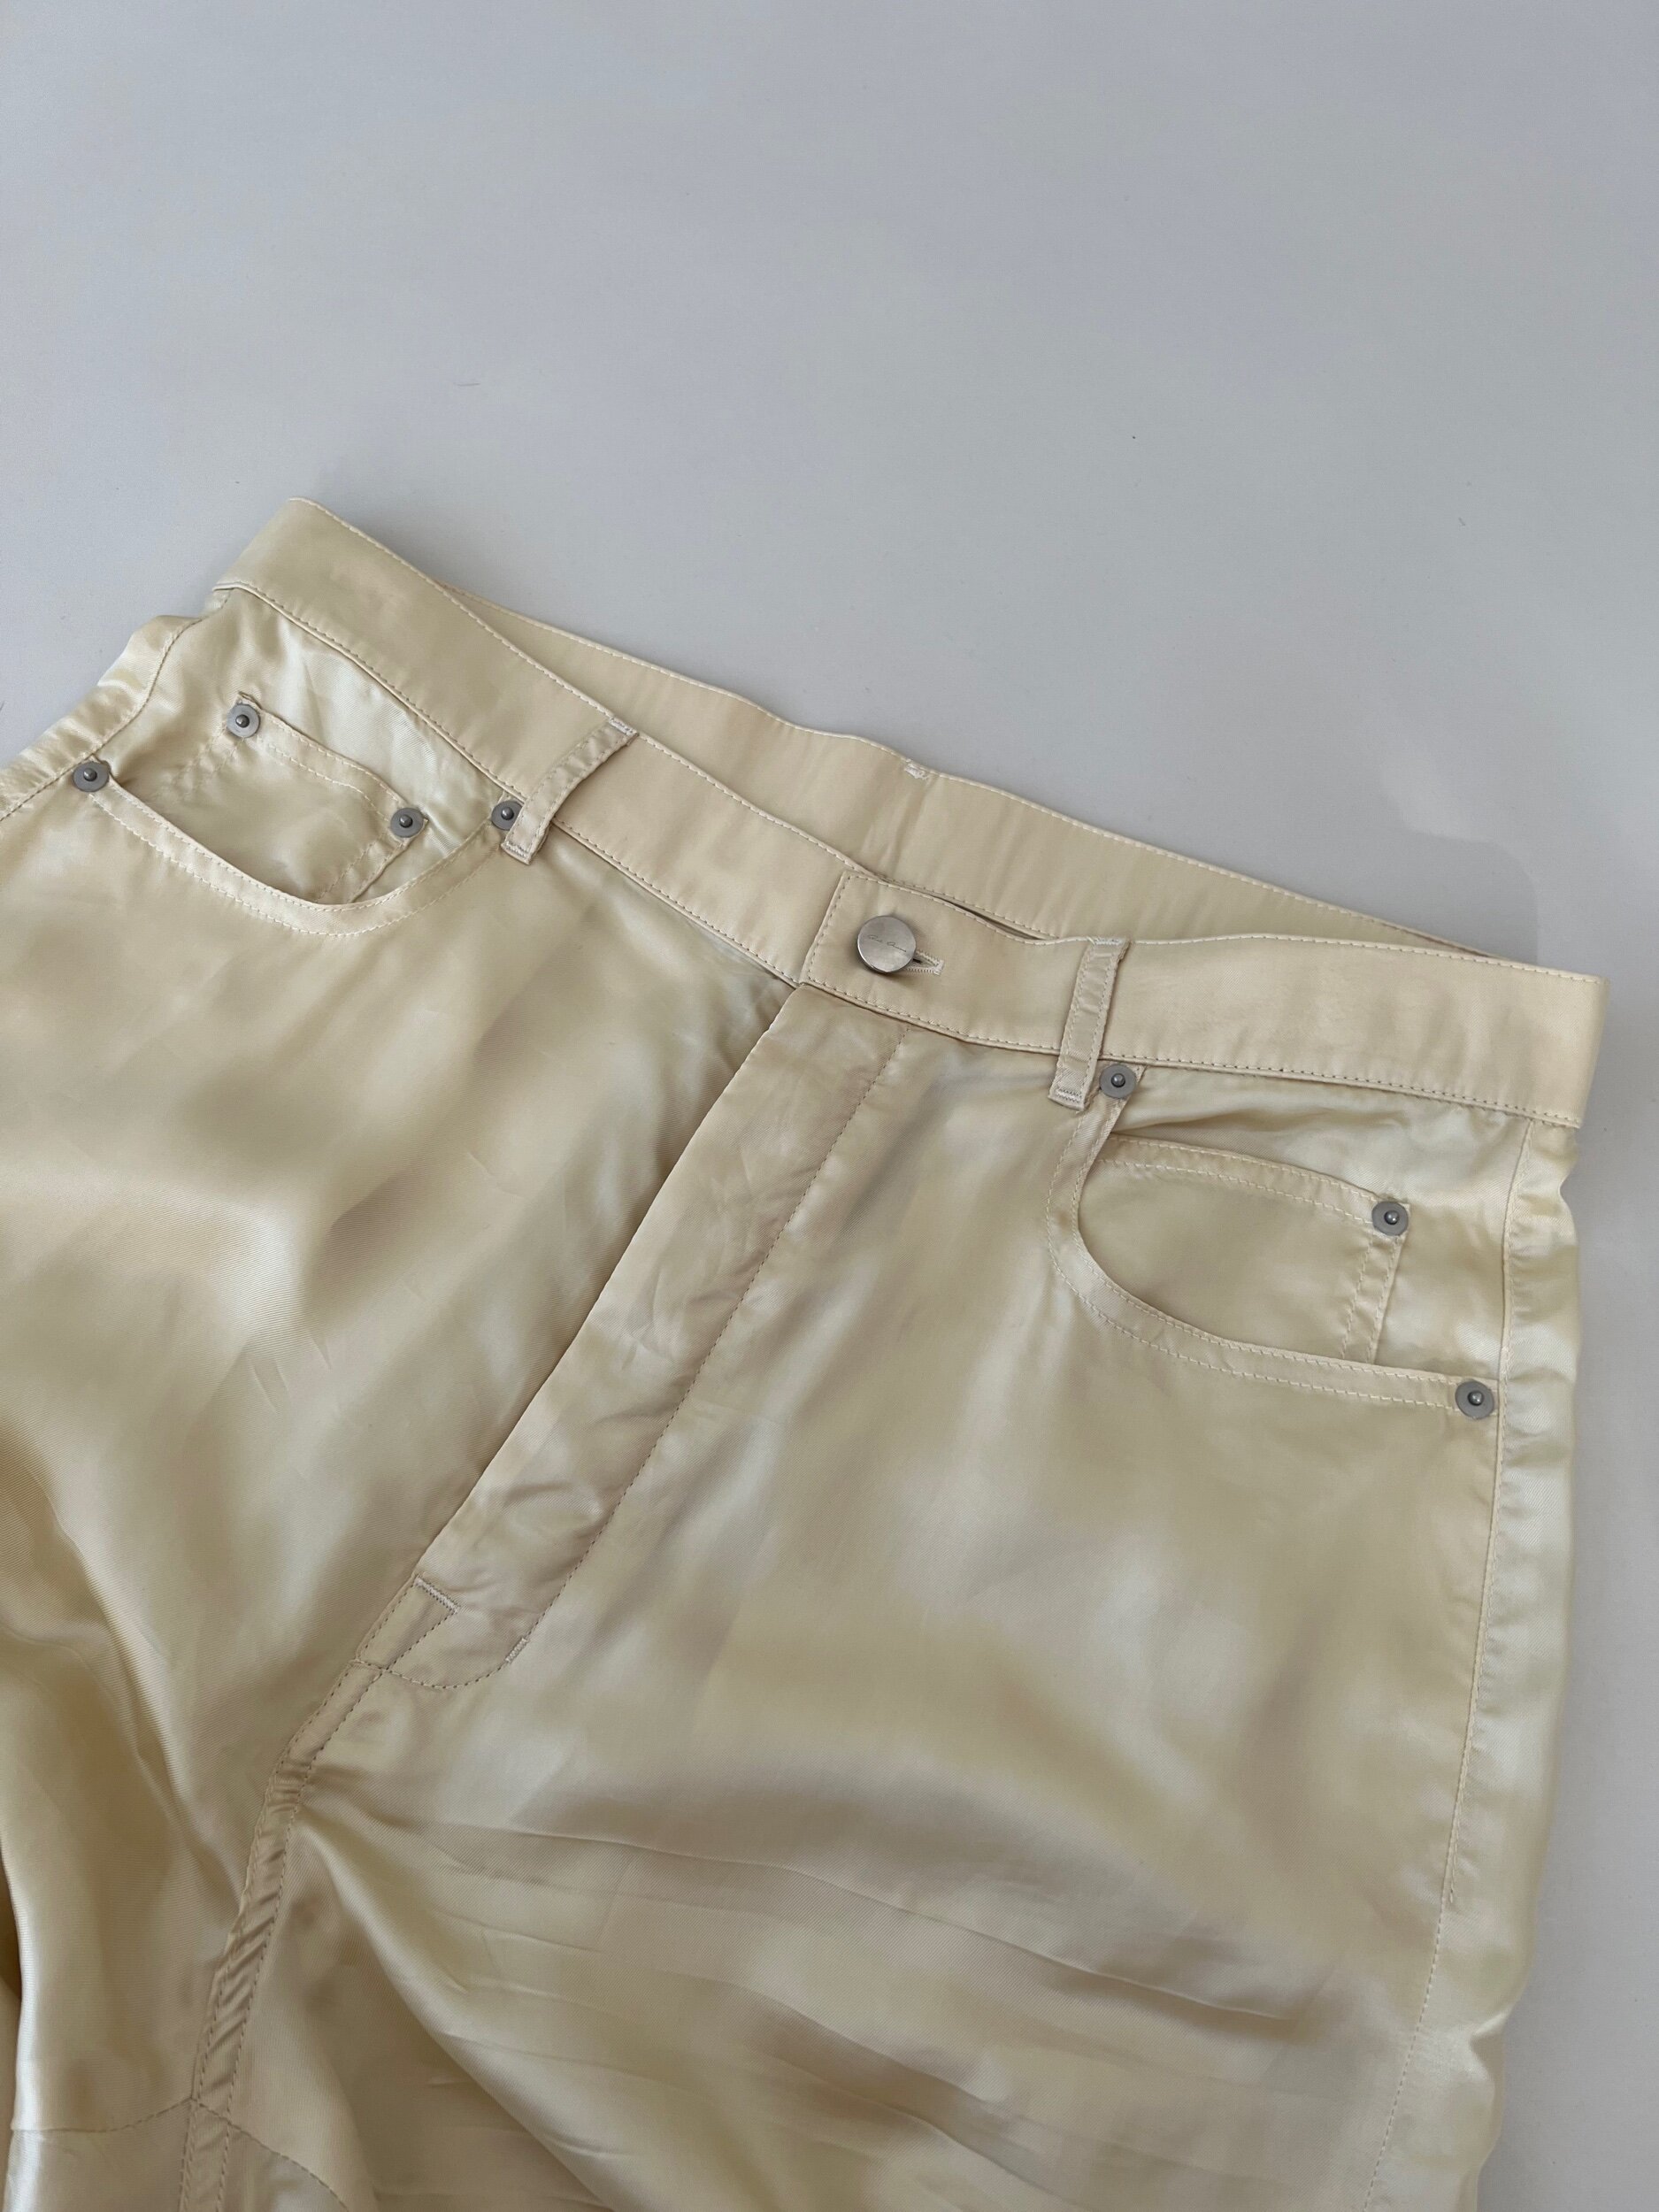 Balenciaga Offshore Baggy Sweatpants — CONSUMED